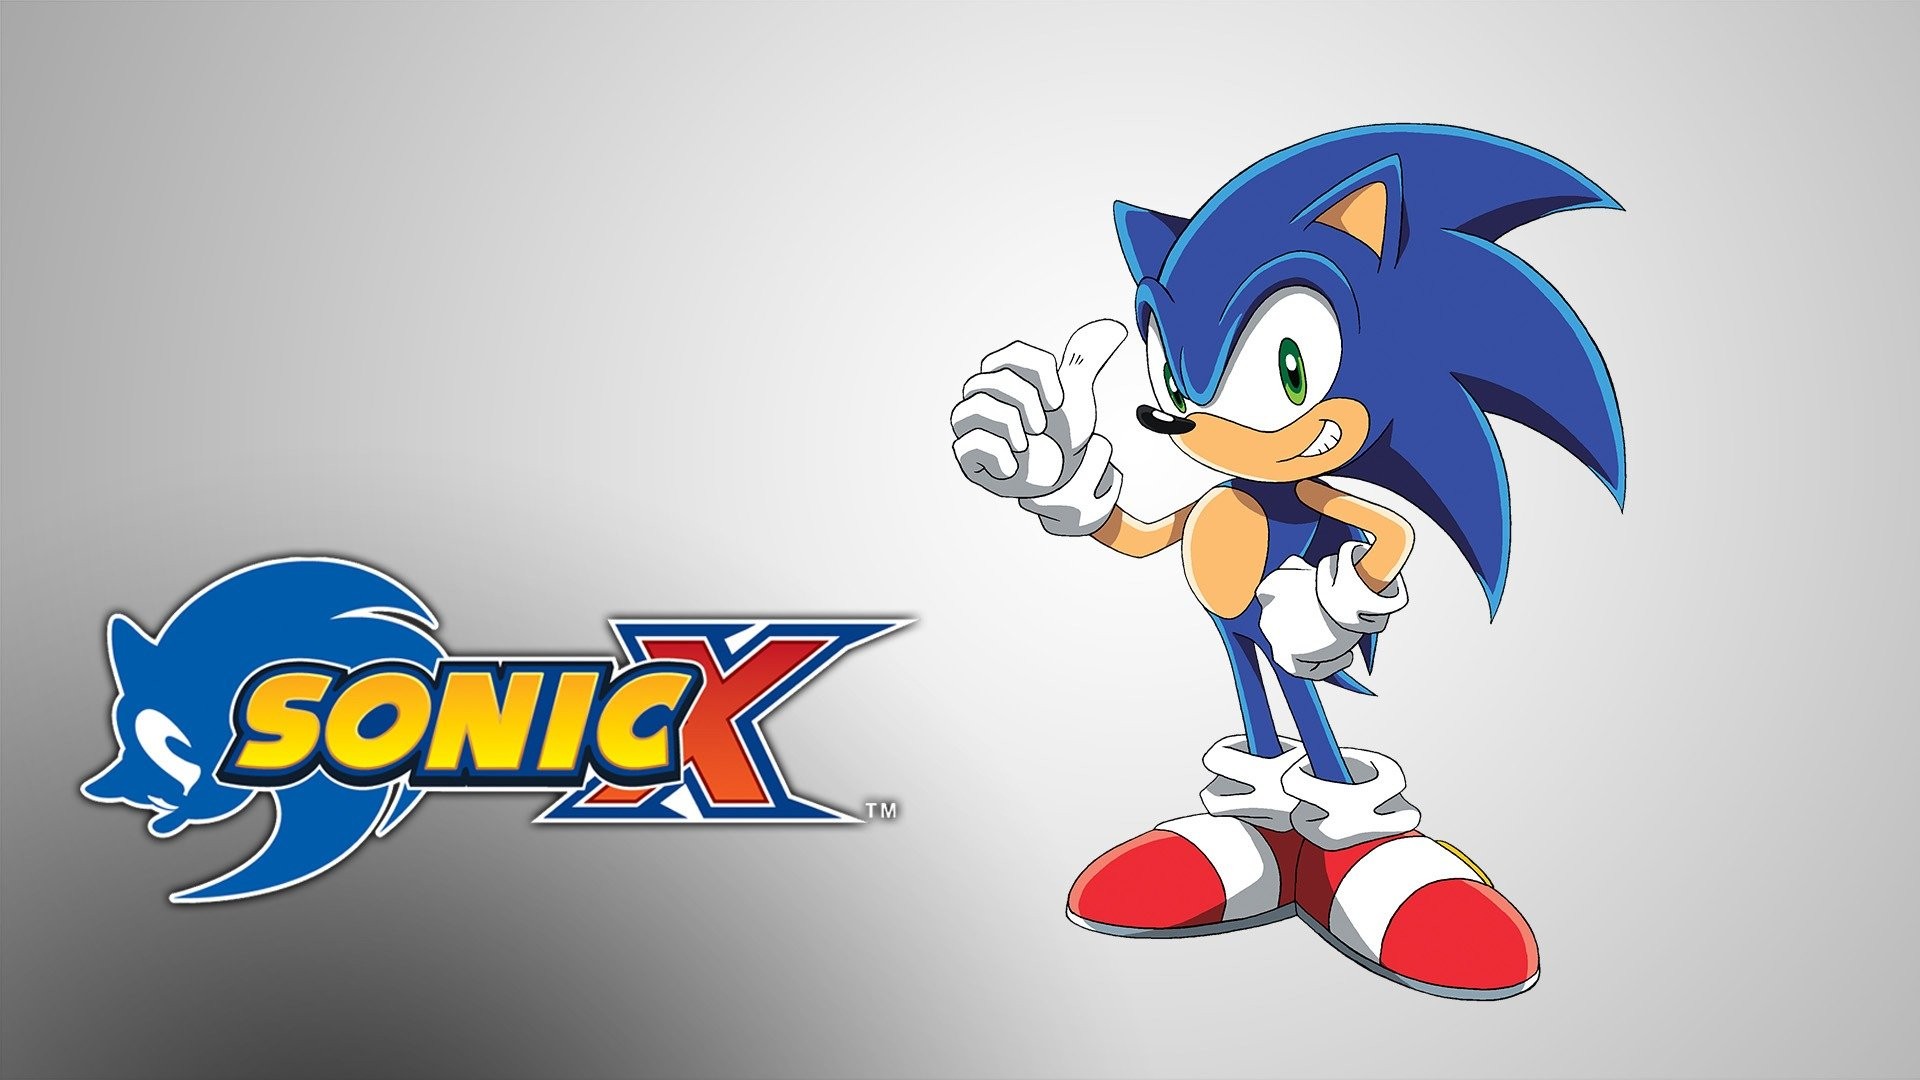 Sonic Tales: 5ª Temporada – Especial Sonic X Image Comics